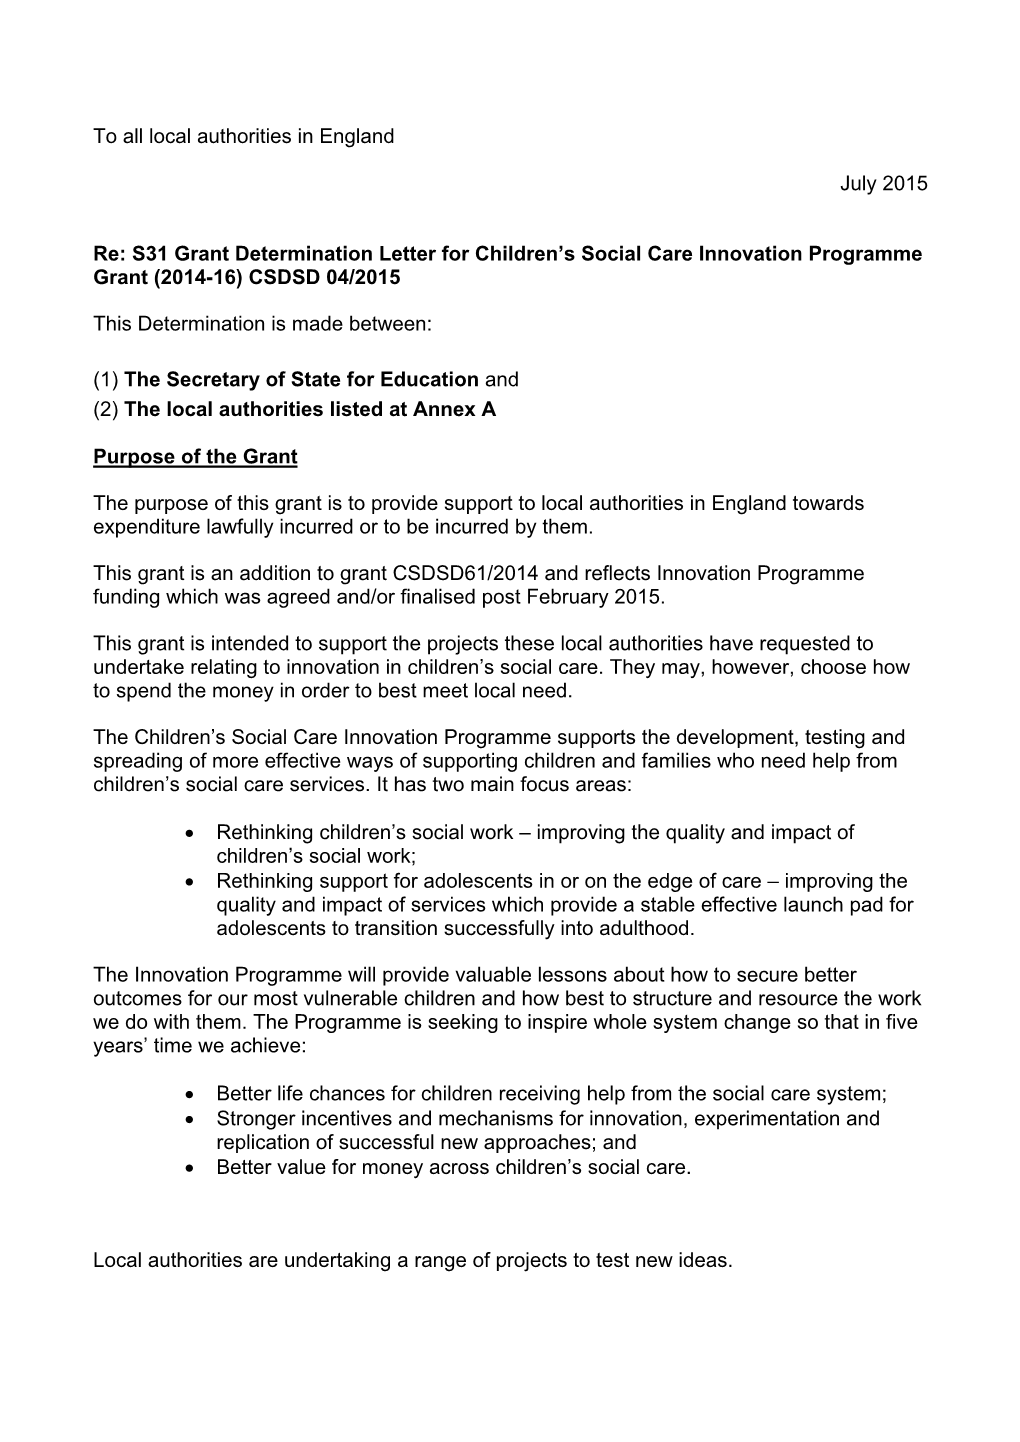 S31 Grant Determination Letter for Children's Social Care Innovation